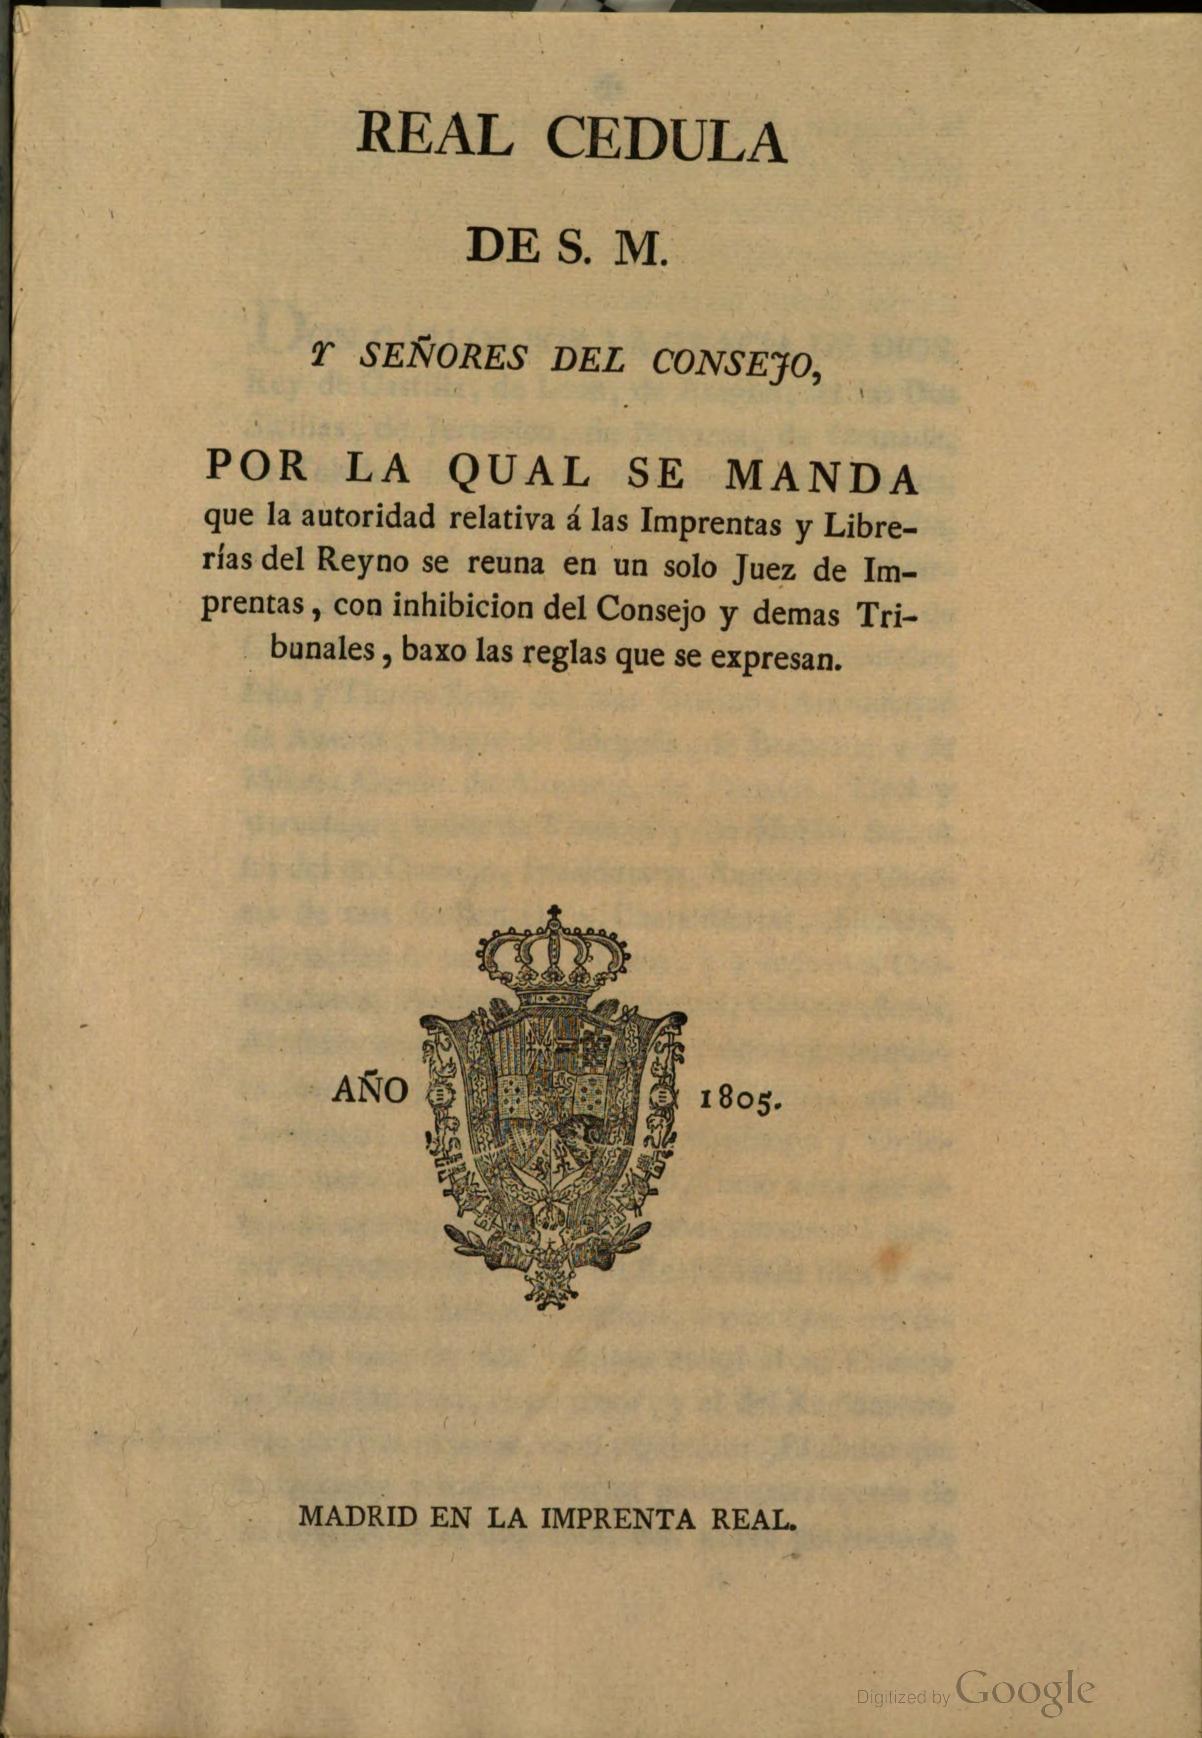 Real Cédula de S.M. y Señores del Consejo, por la qual se manda que la autoridad relativa a las imprentas y librerías del Reyno se reúna en un solo Juez de Imprentas